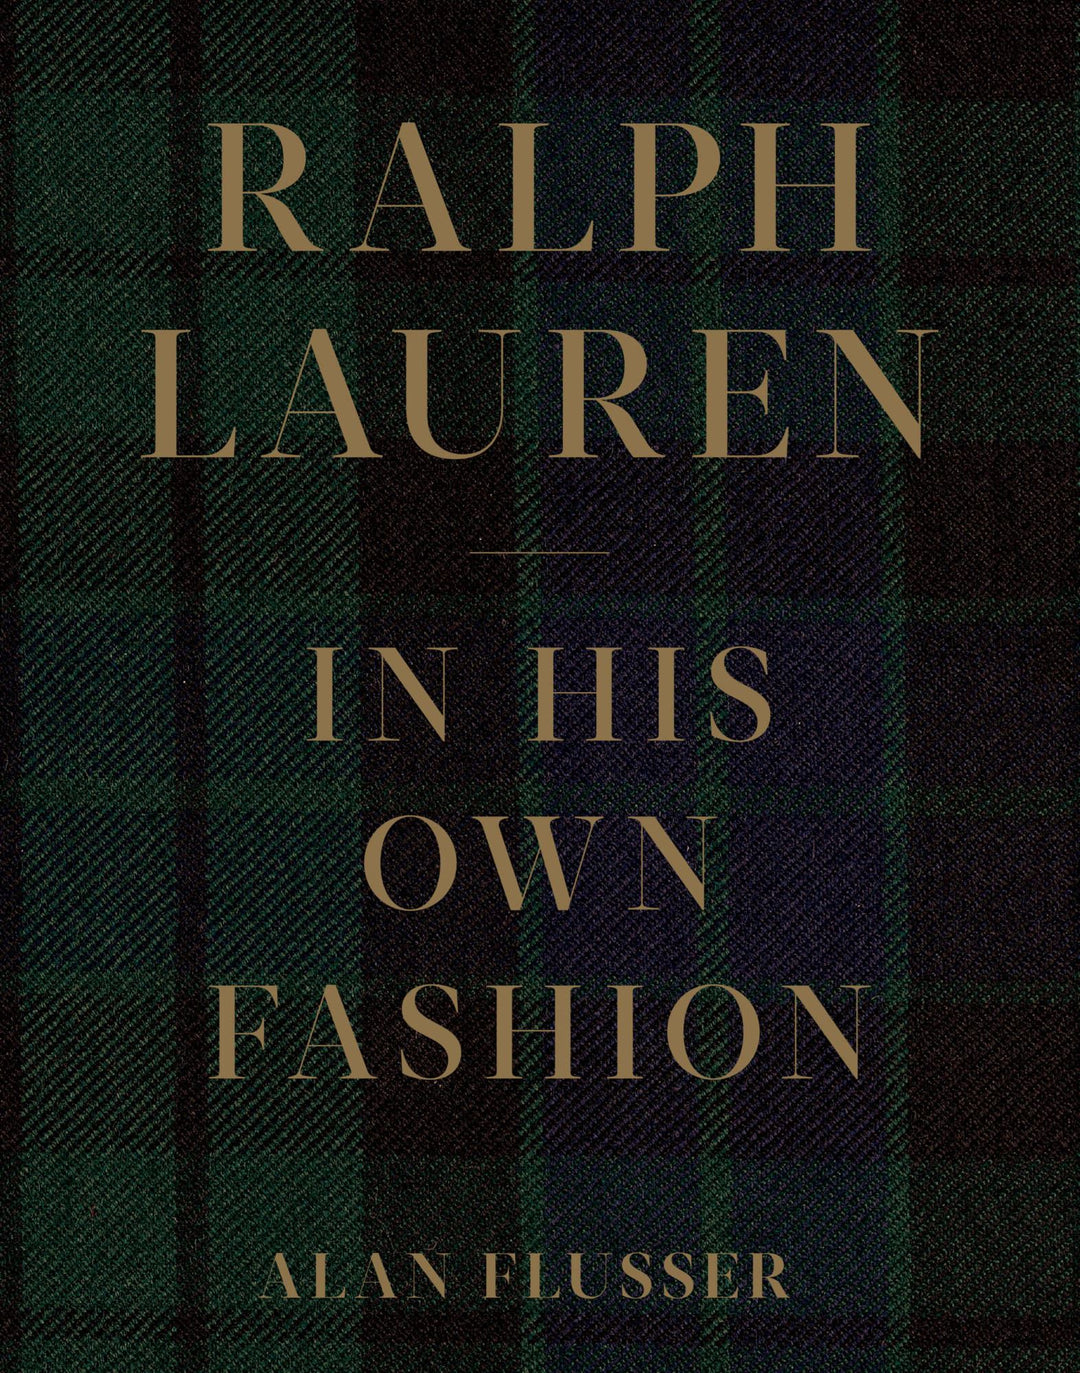 RALPH LAUREN IN HIS OWN FASHION